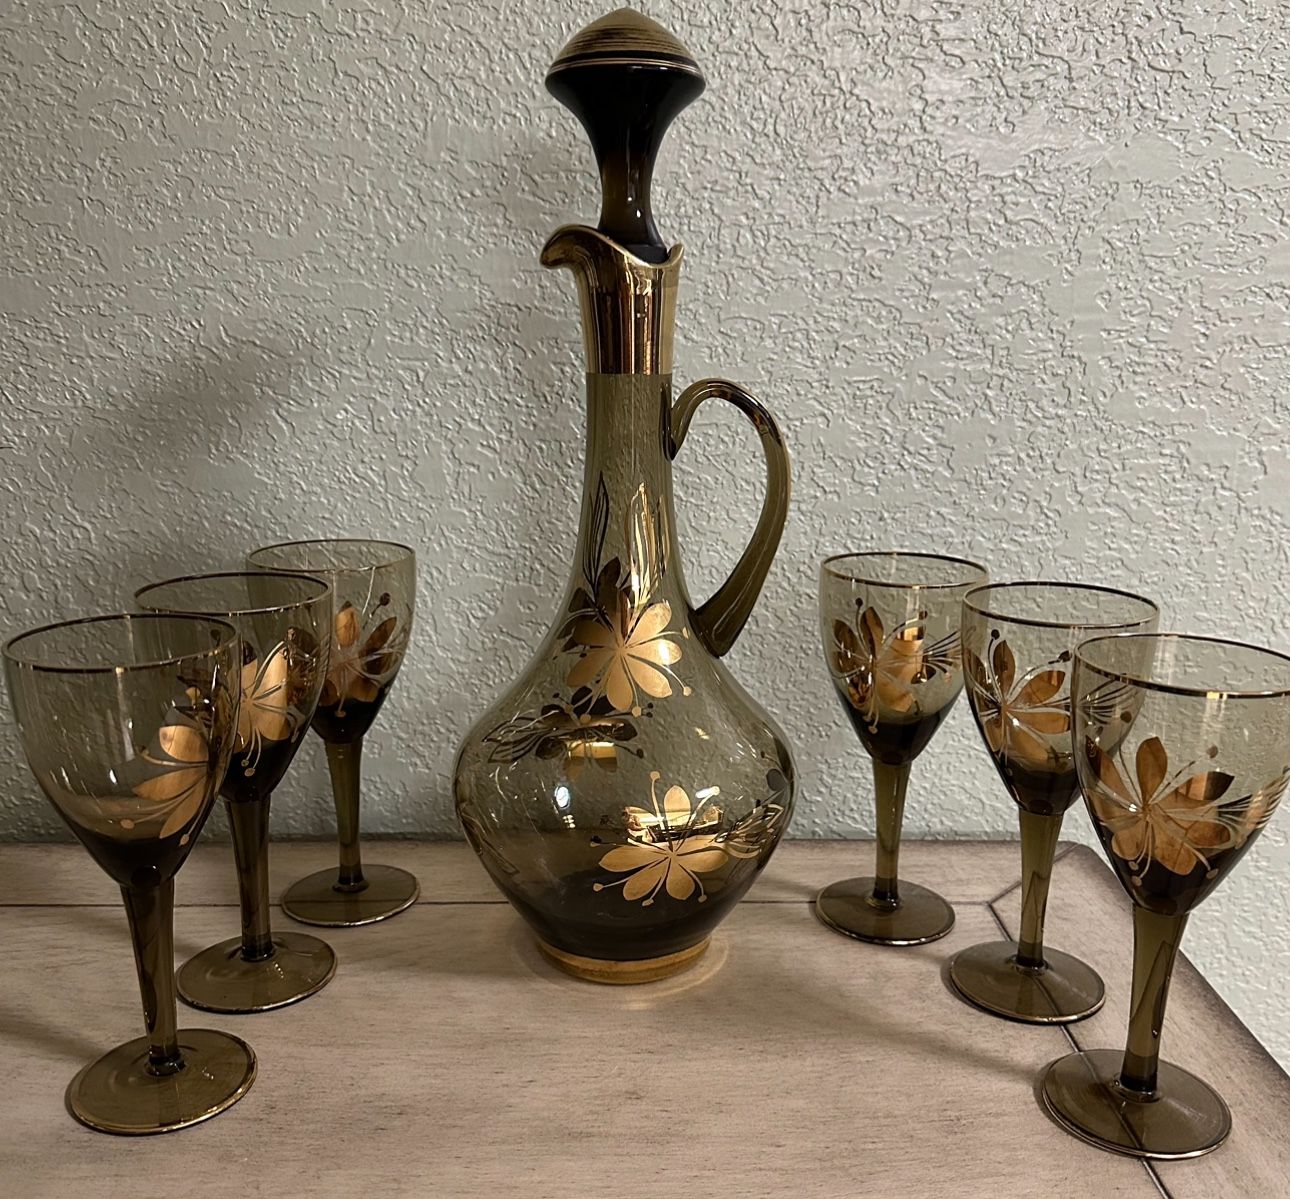 Antique Wine Decanter & Glasses 24K Gold Trim